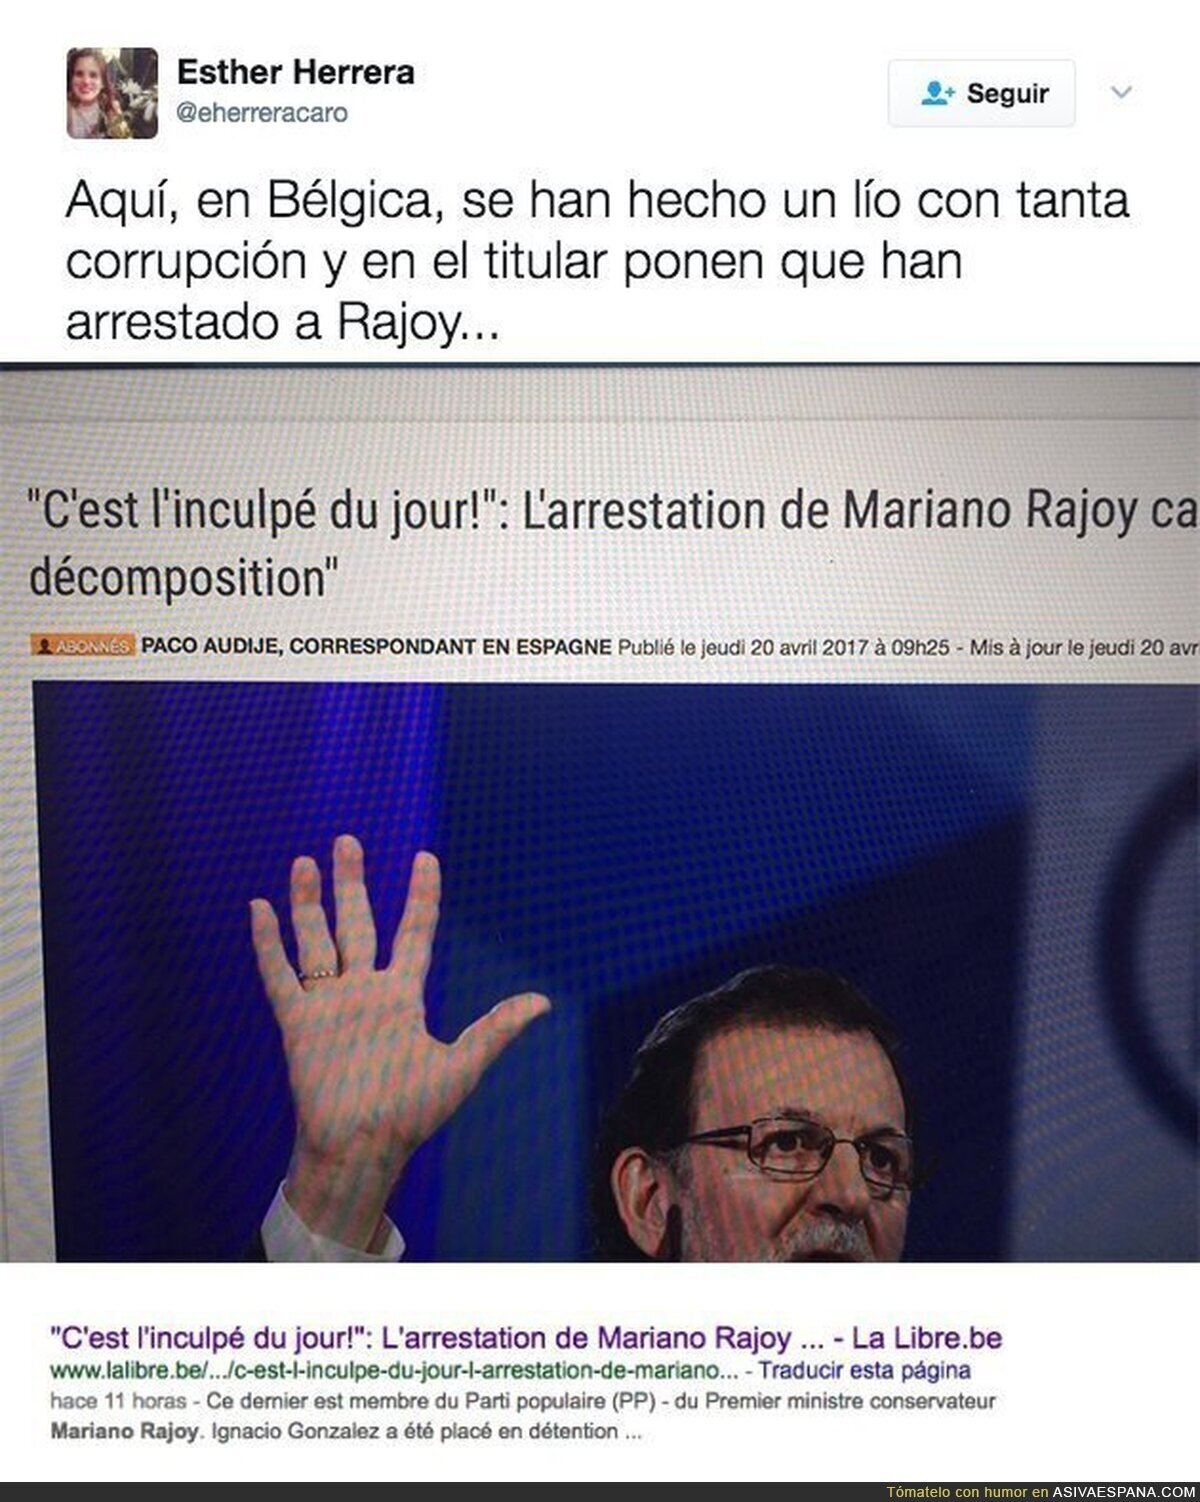 Mariano Rajoy ha sido arrestado